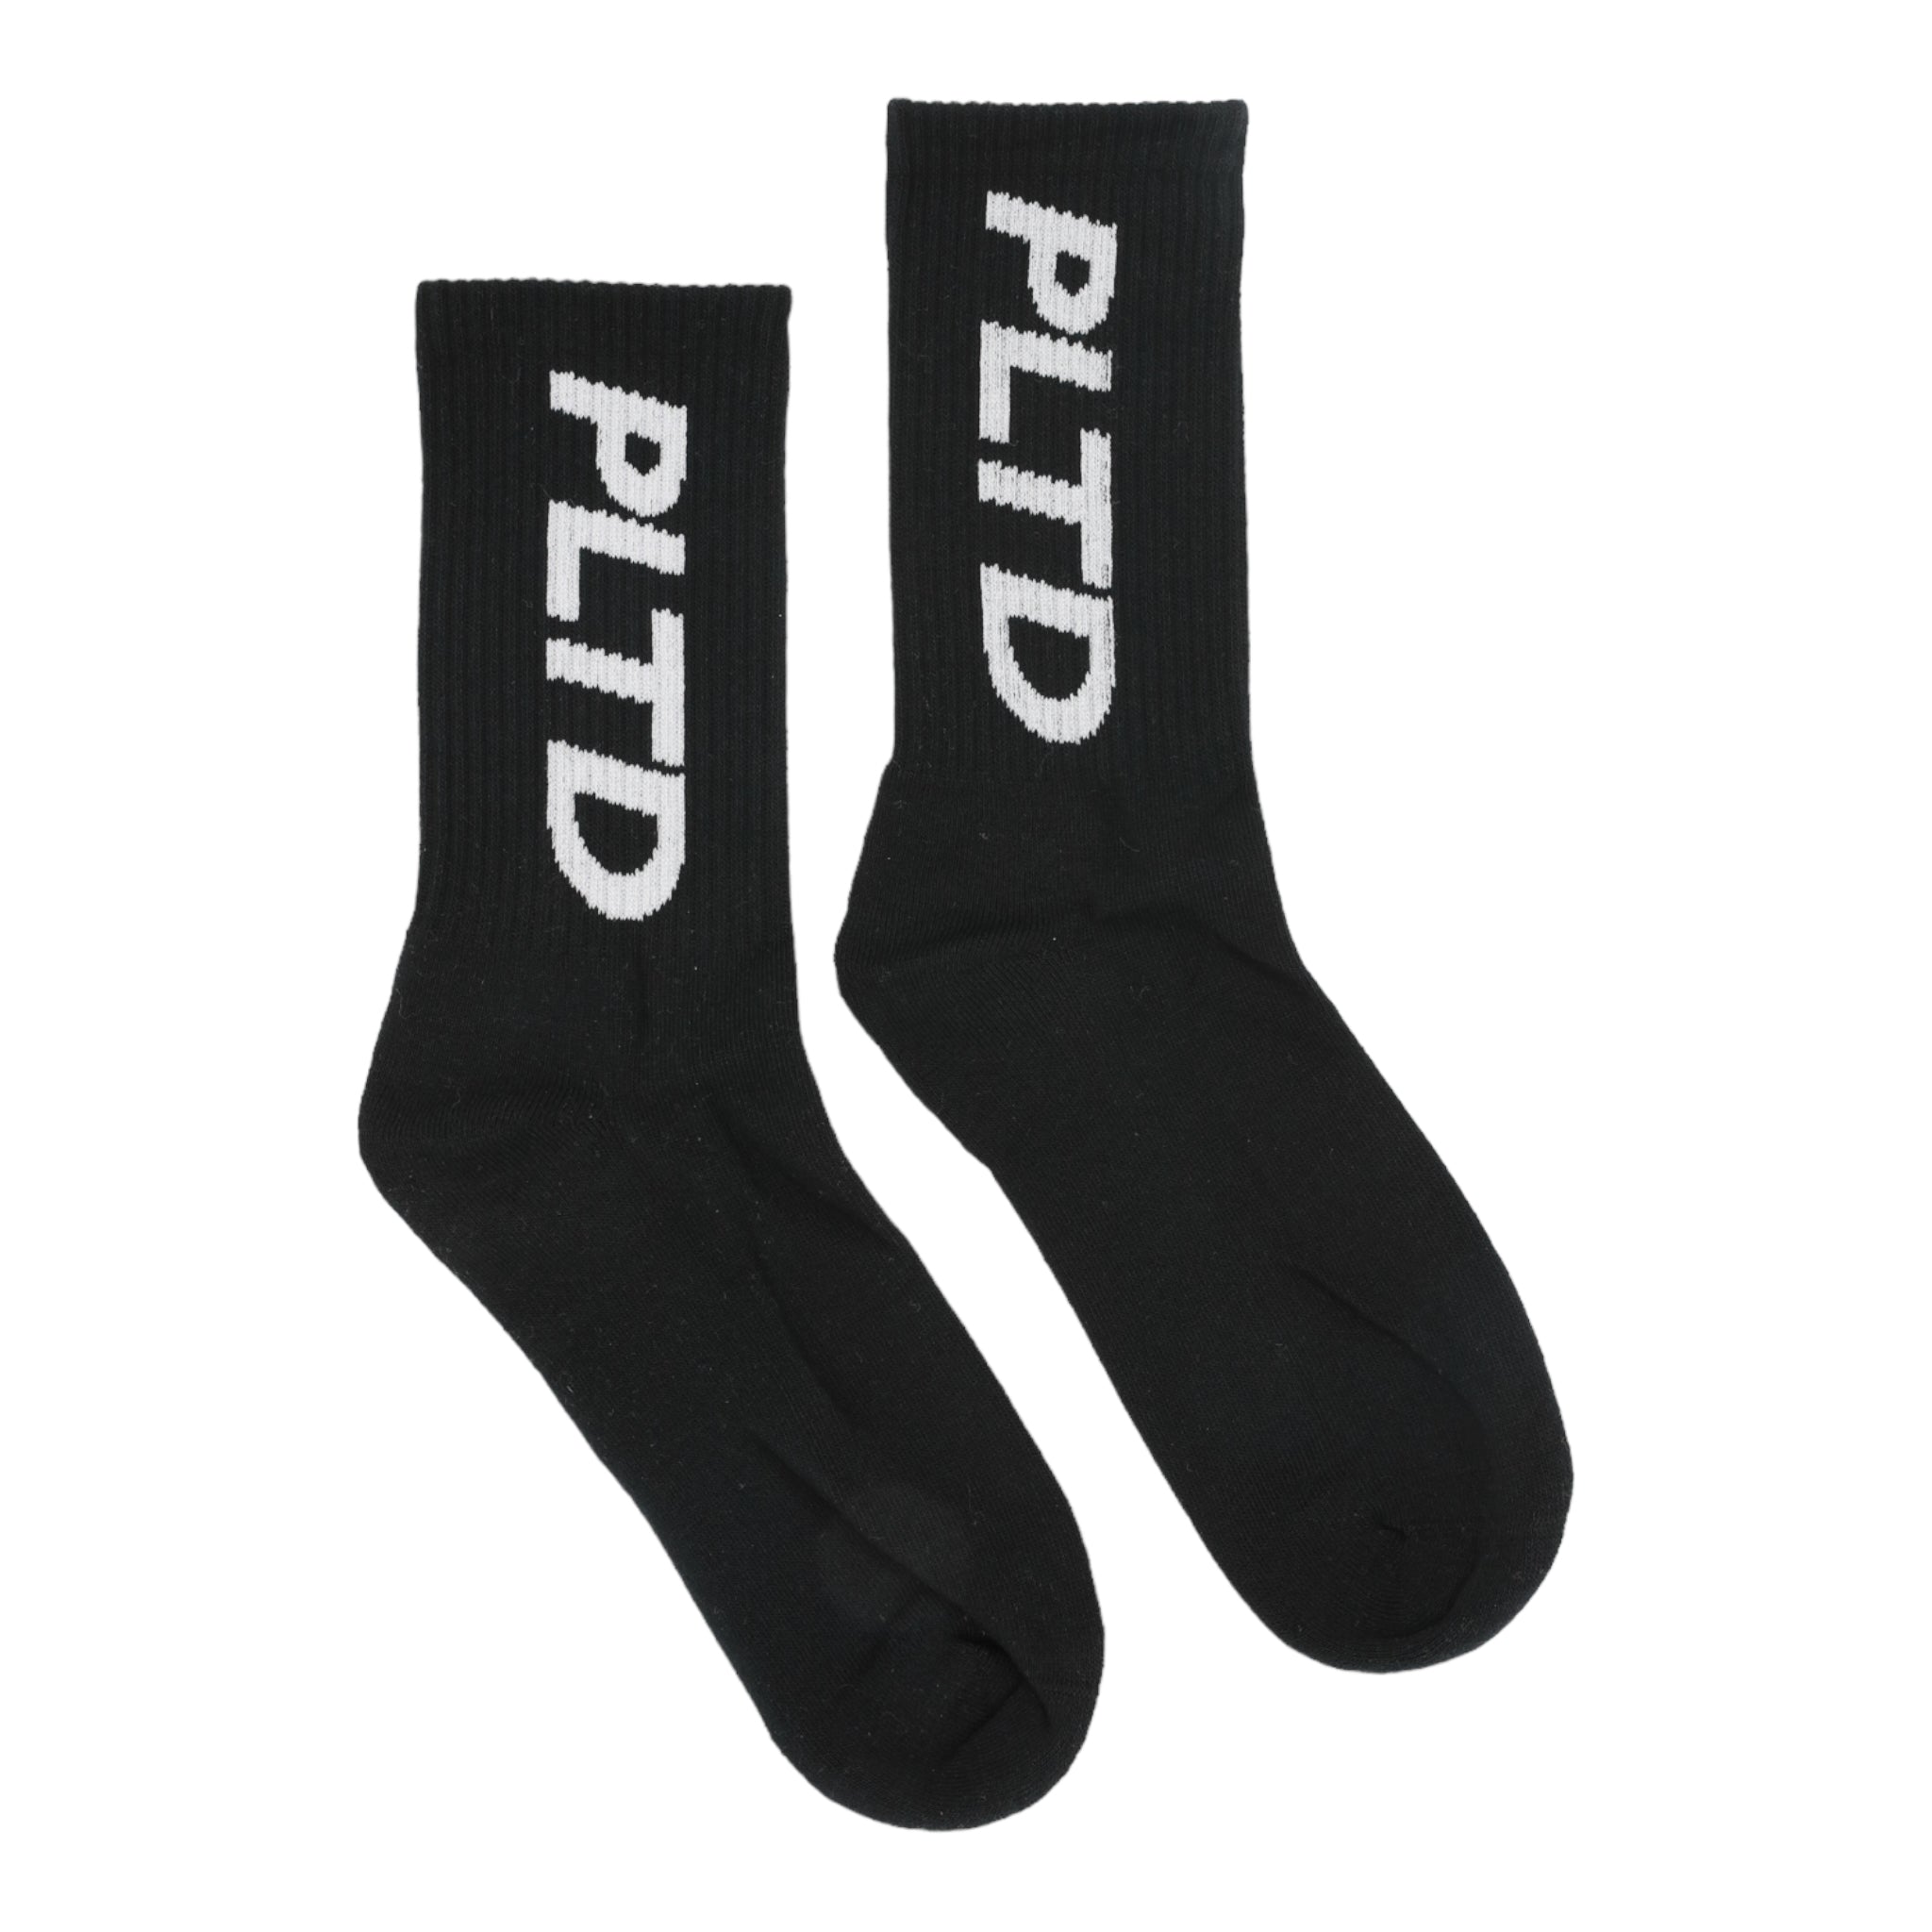 Team PLTD - 6 Pack Terry Sock Bundle